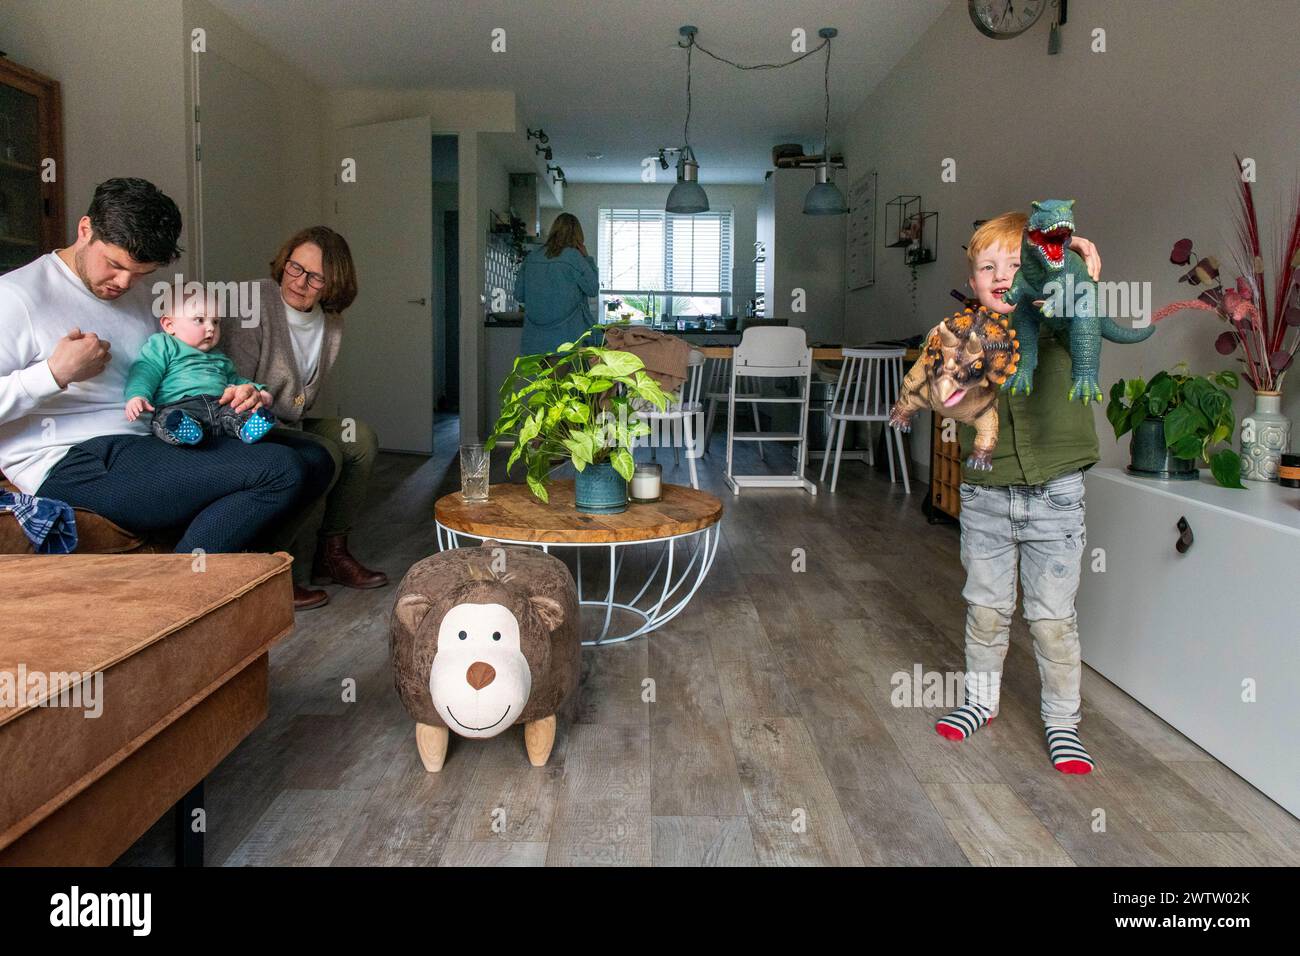 Die Familie genießt einen gemütlichen Moment in ihrem warmen, einladenden Wohnzimmer. Stockfoto